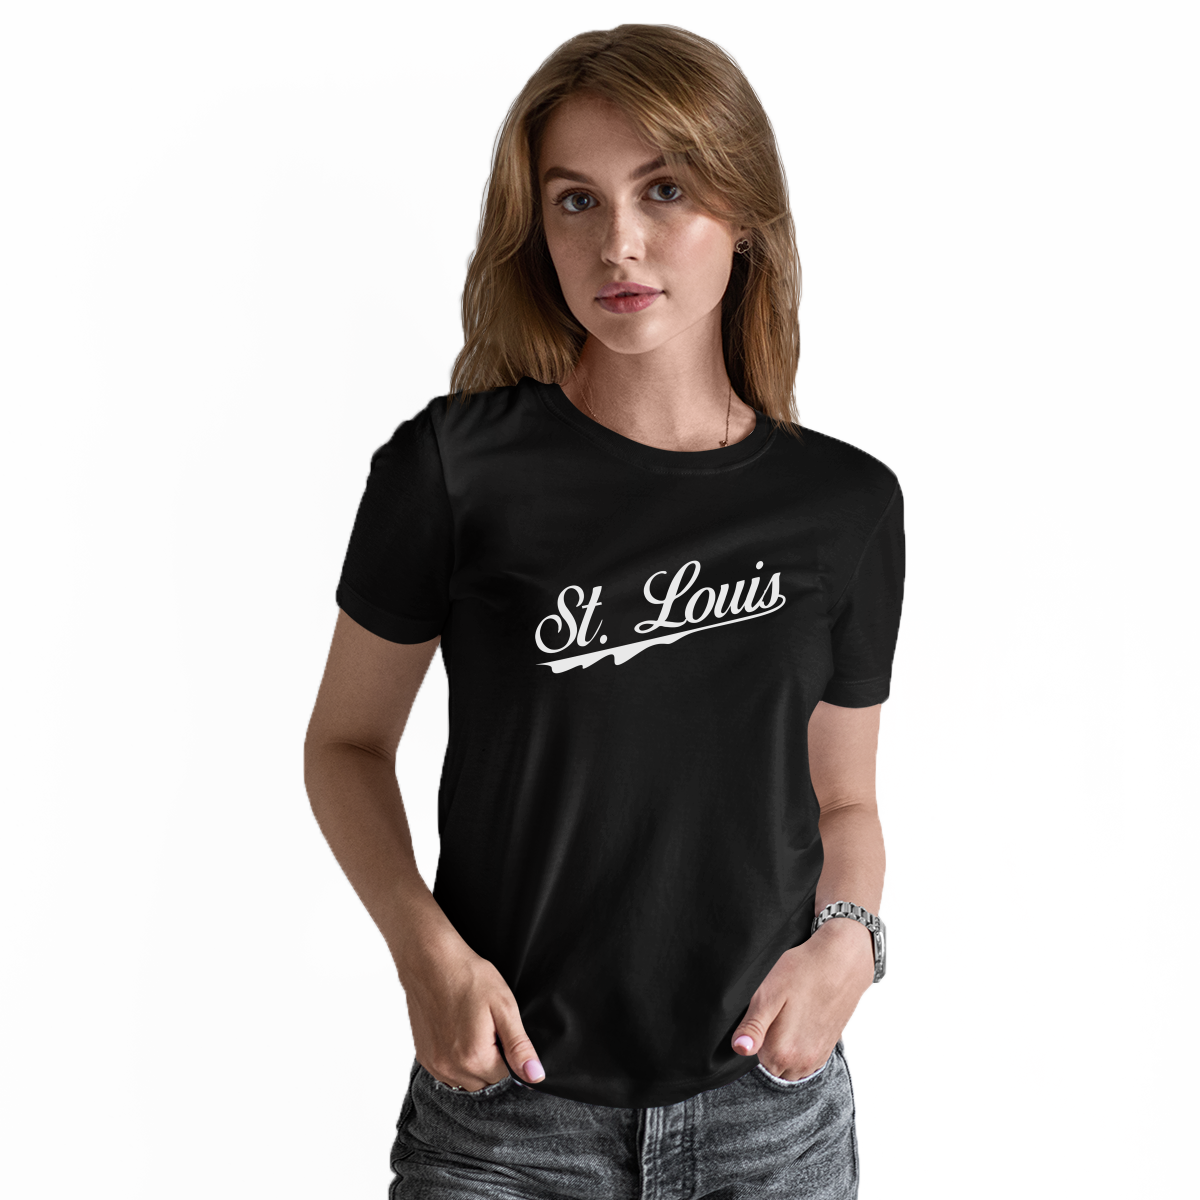 St. Louis Women's T-shirt